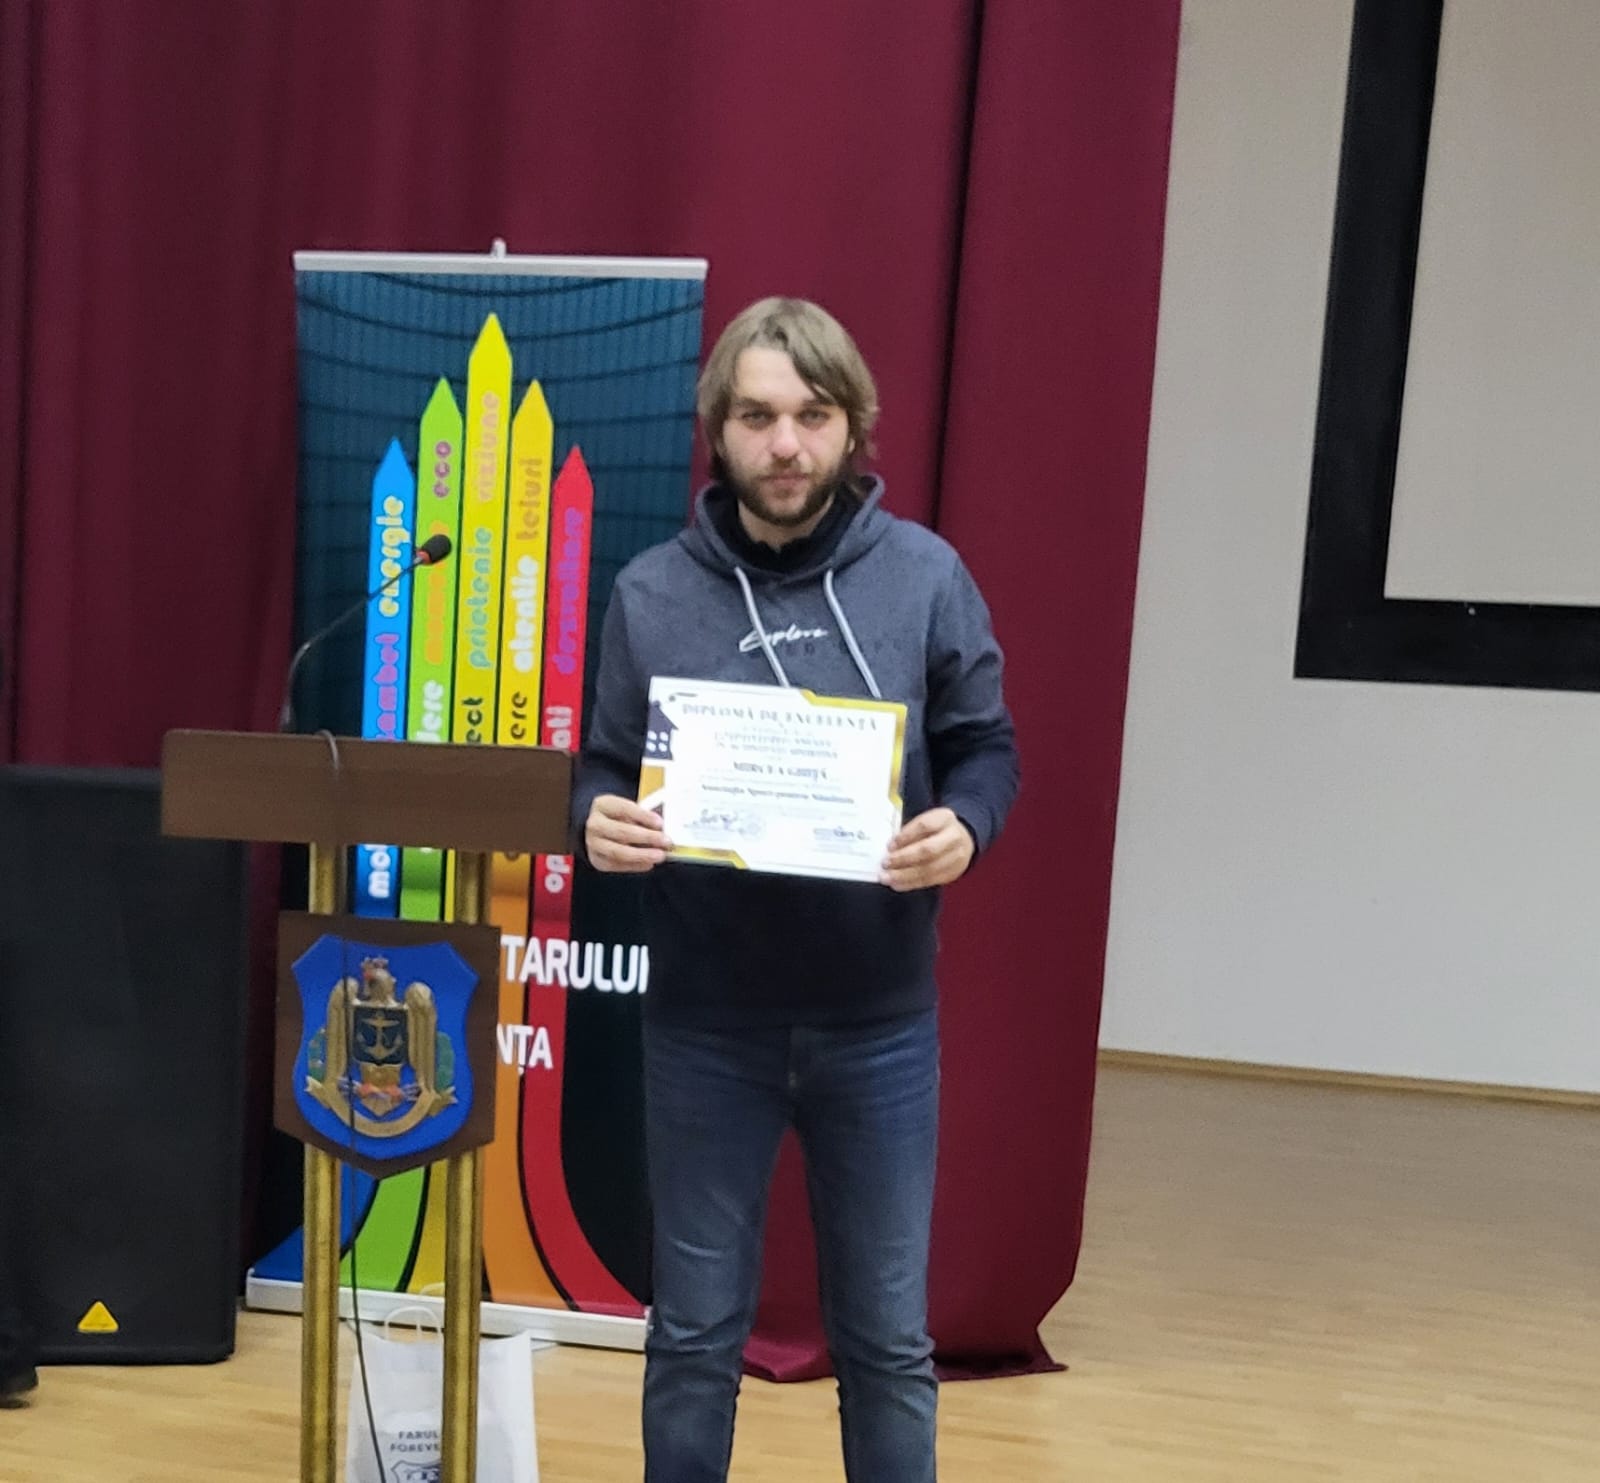 GALA VOLUNTARILOR și-a recompensat nominalizații. Mircea Ghiță, redactor Cuget Liber printre laureați - e5cebfa5a79b4d5b85448dab5f3090ac-1701802734.jpg